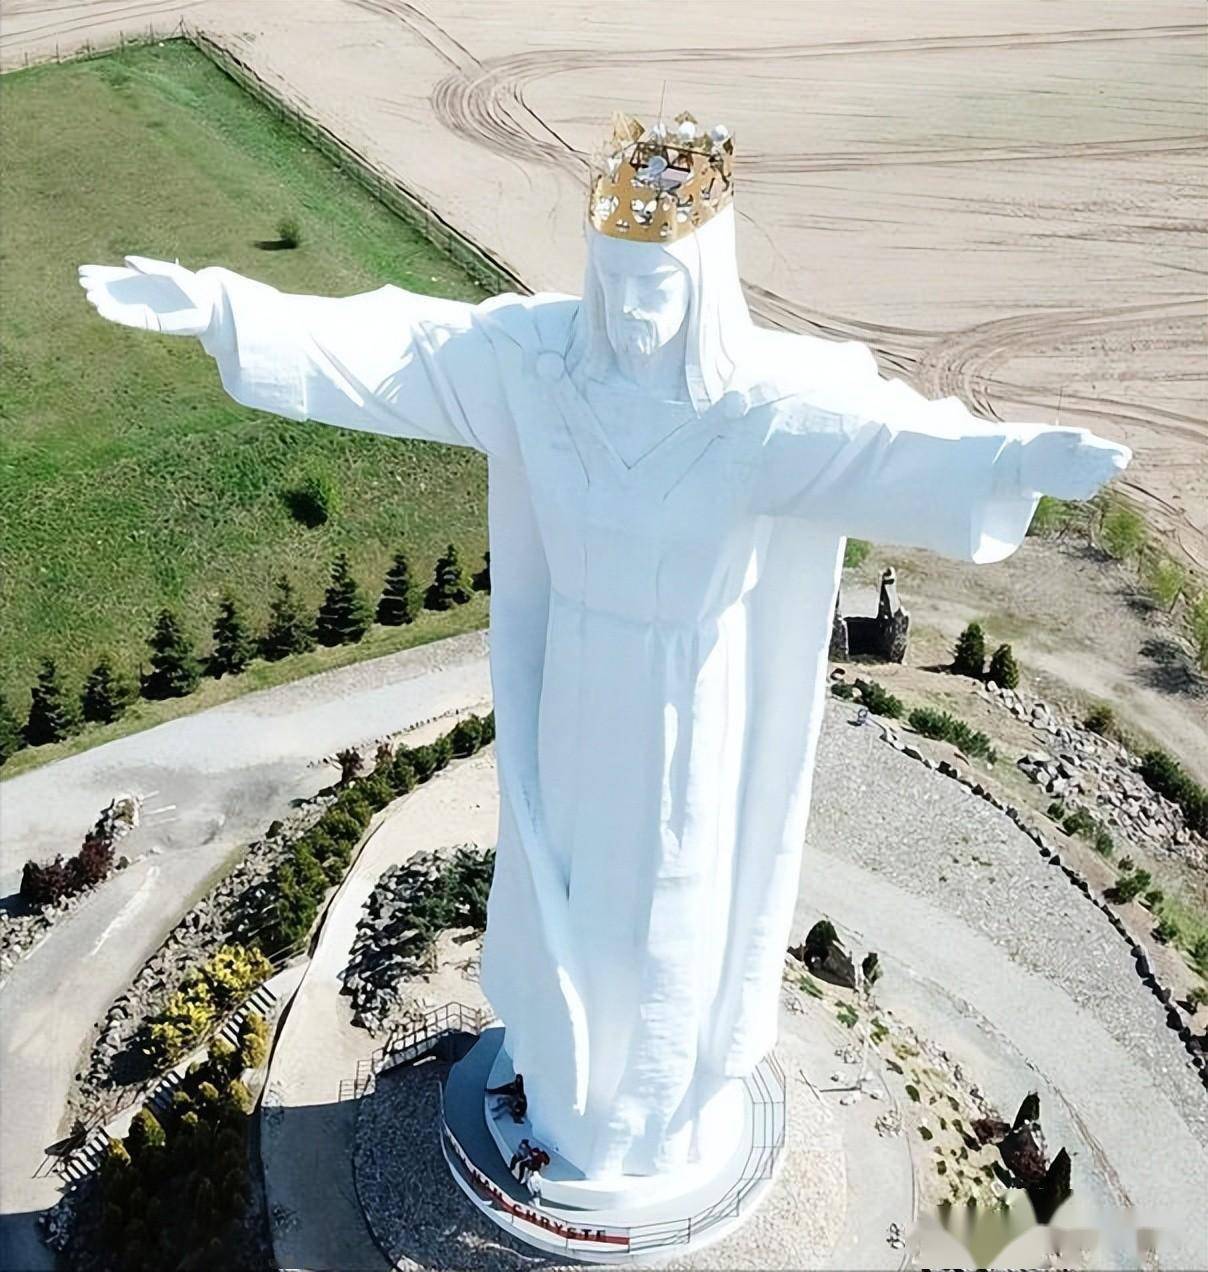 全球最大的耶稣像不在巴西里约热内,而是在波兰希维博津